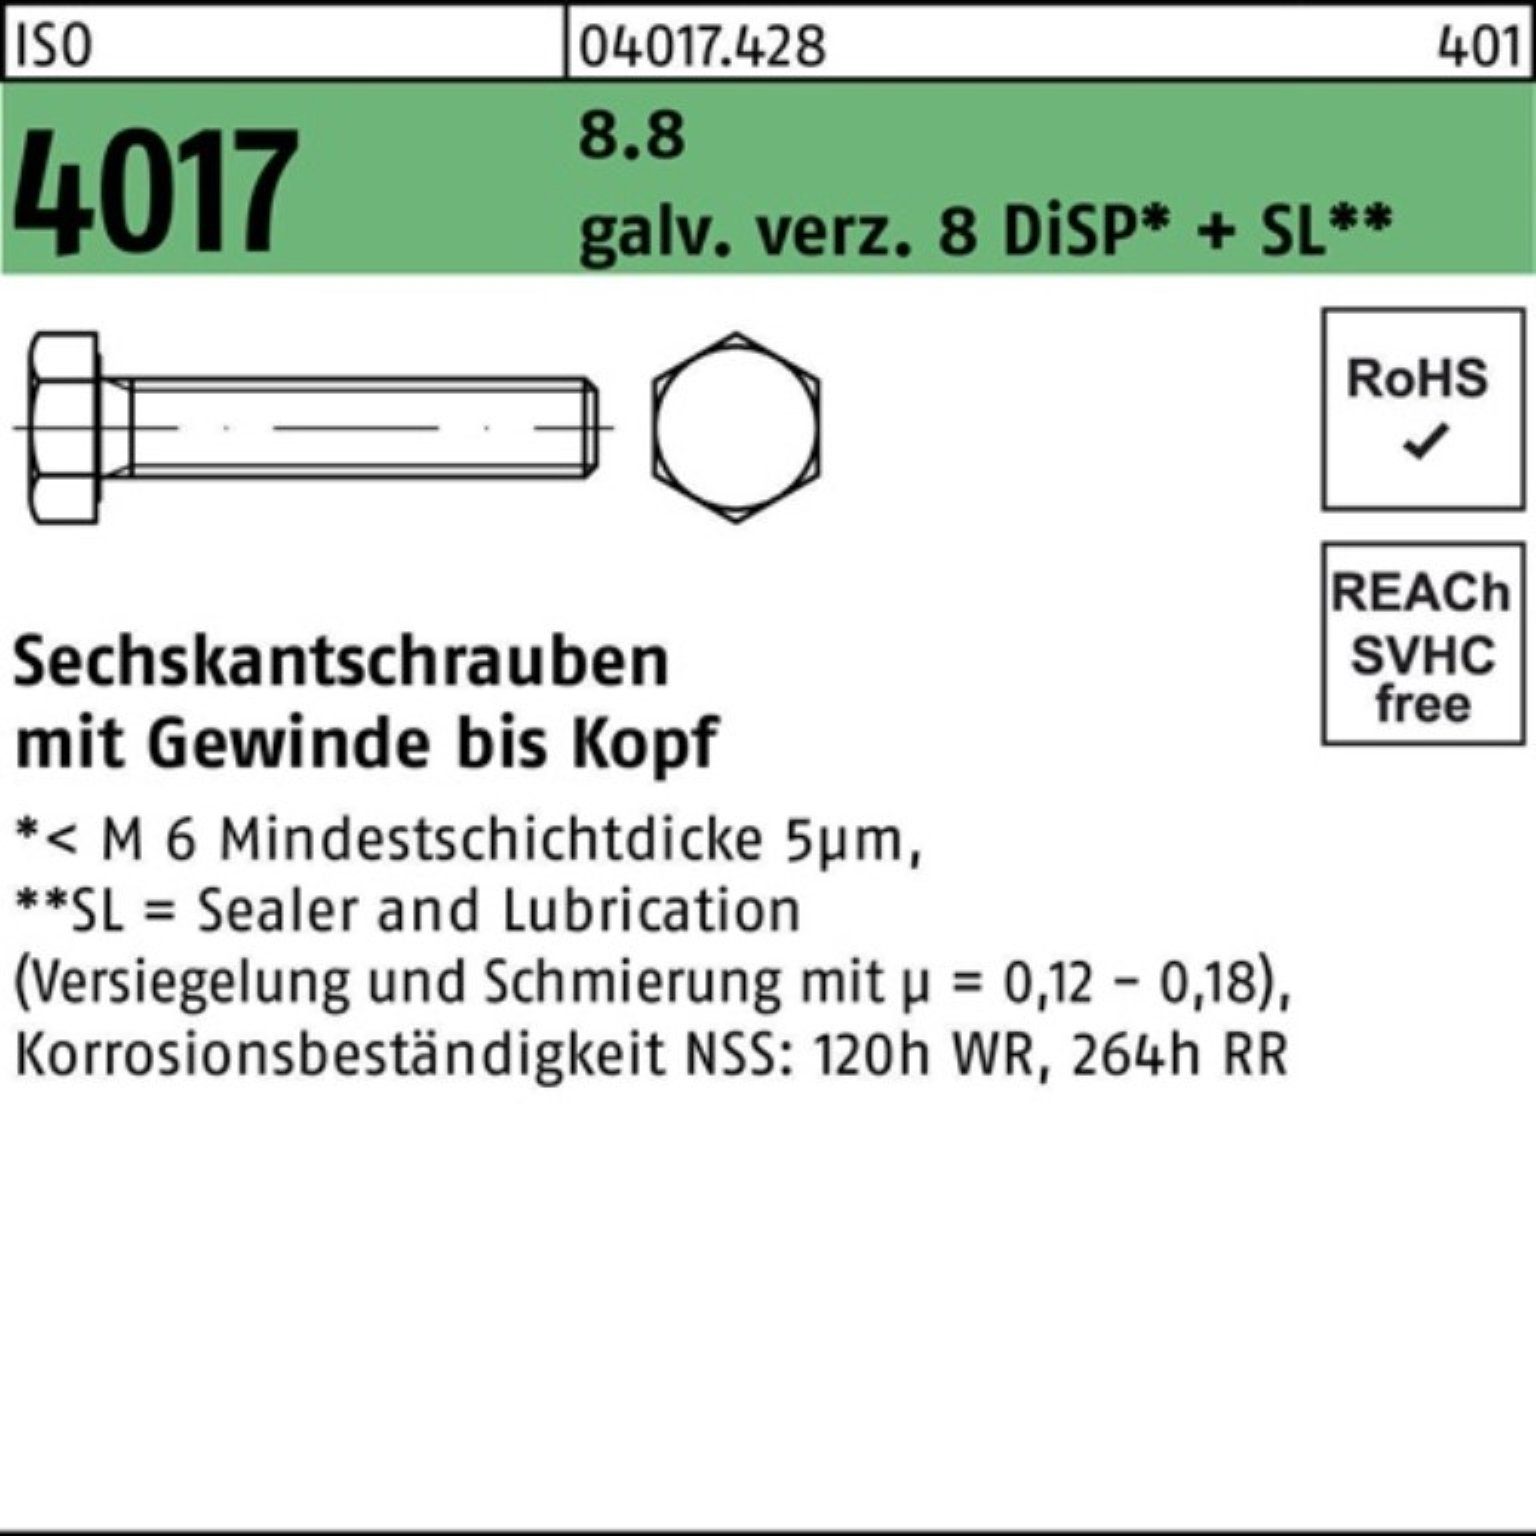 Bufab Sechskantschraube 100er Pack Sechskantschraube ISO VG 4017 DiSP 8.8 8 galv.verz. M12x 75